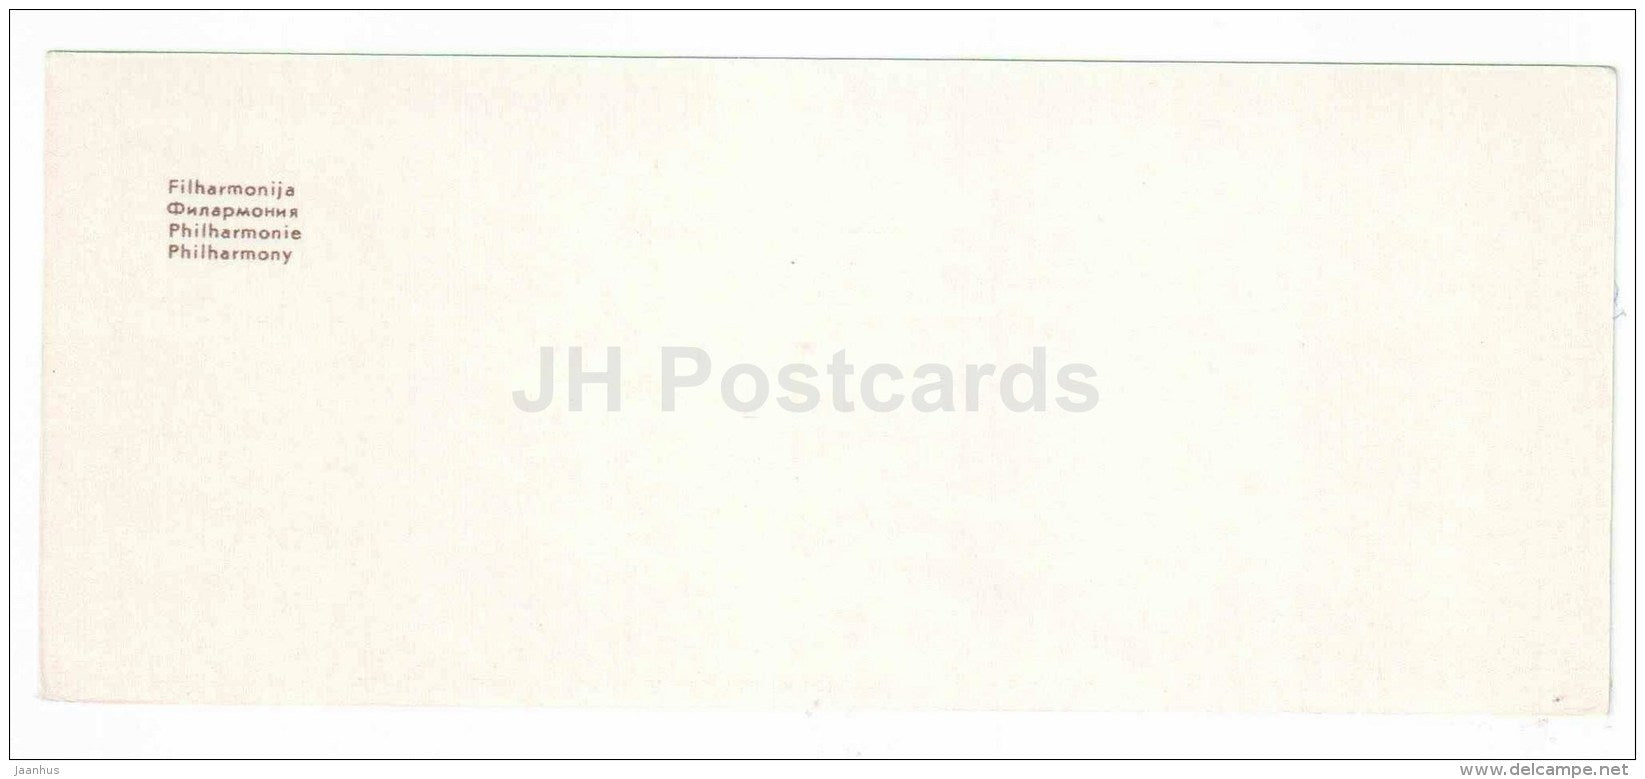 Philharmony - trolleybus - Kaunas - mini postcard - 1971 - Lithuania USSR - unused - JH Postcards